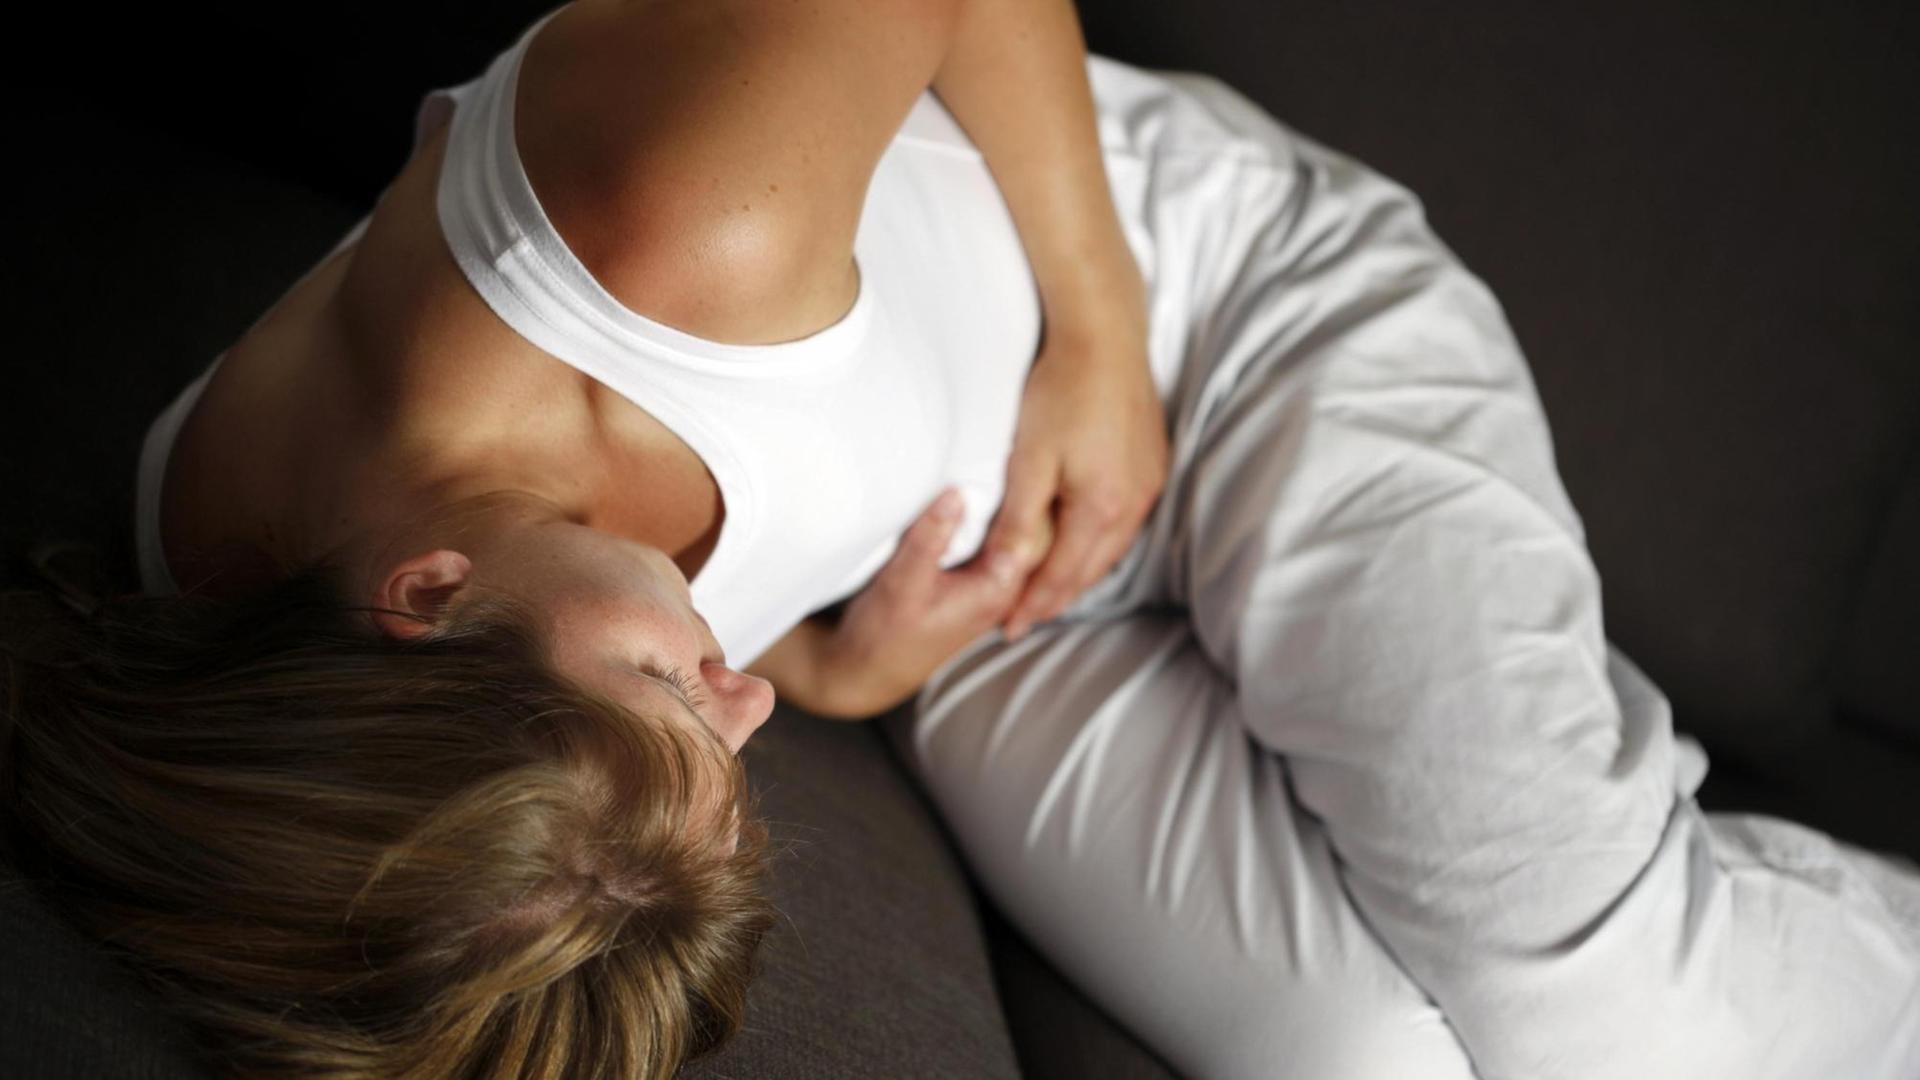 Symbolbild Leibschmerzen: Eine junge Frau liegt gekrümmt auf einem Sofa und hält sich die Hände auf die Magengegend.